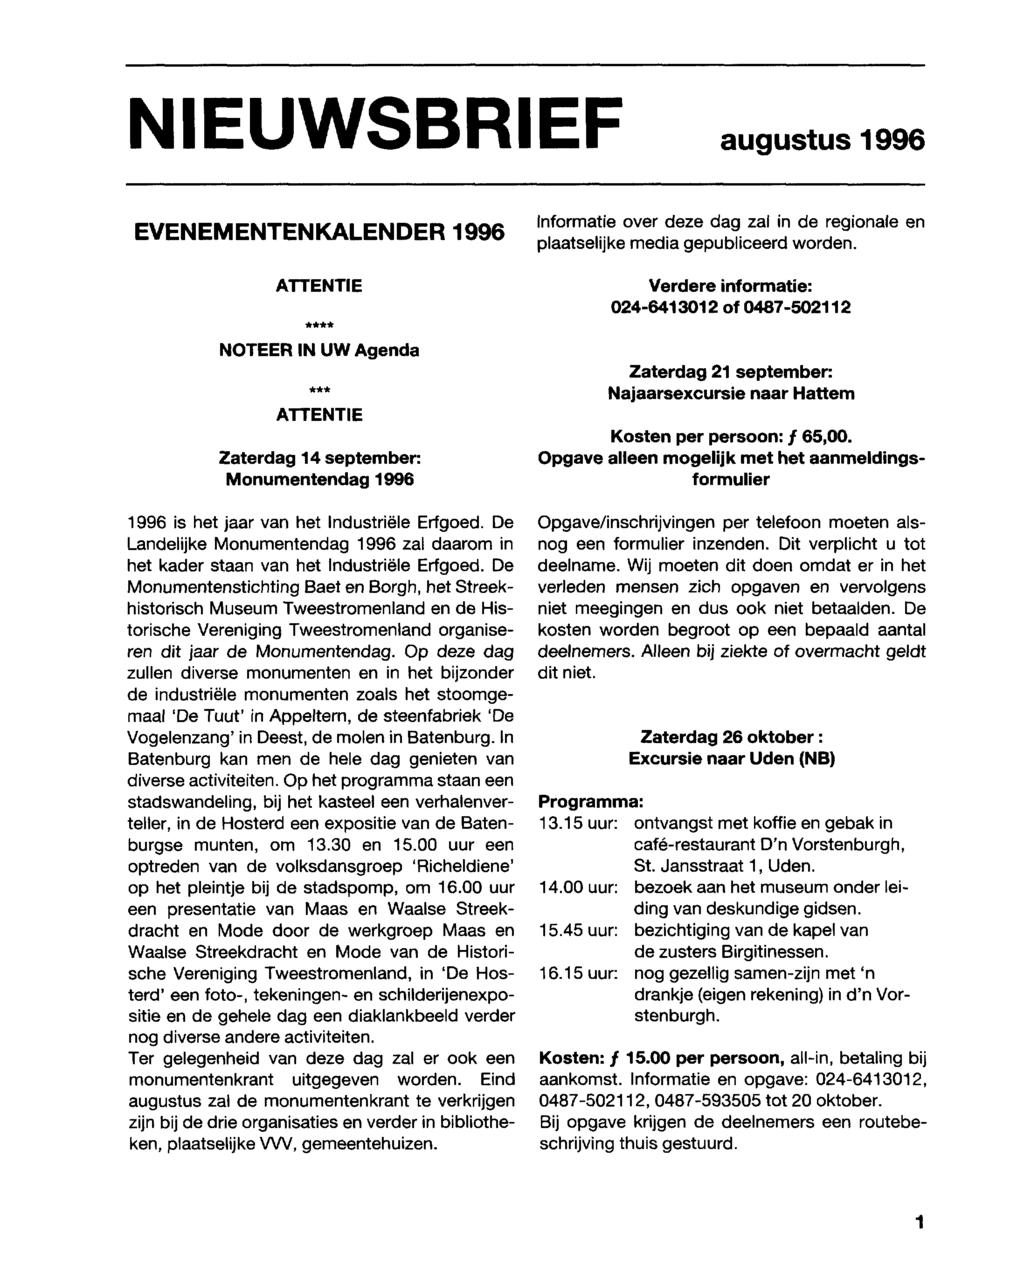 NIEUWSBRIEF augustus 1996 EVENEMENTENKALENDER 1996 ATTENTIE NOTEER IN UW Agenda ATTENTIE Zaterdag 14